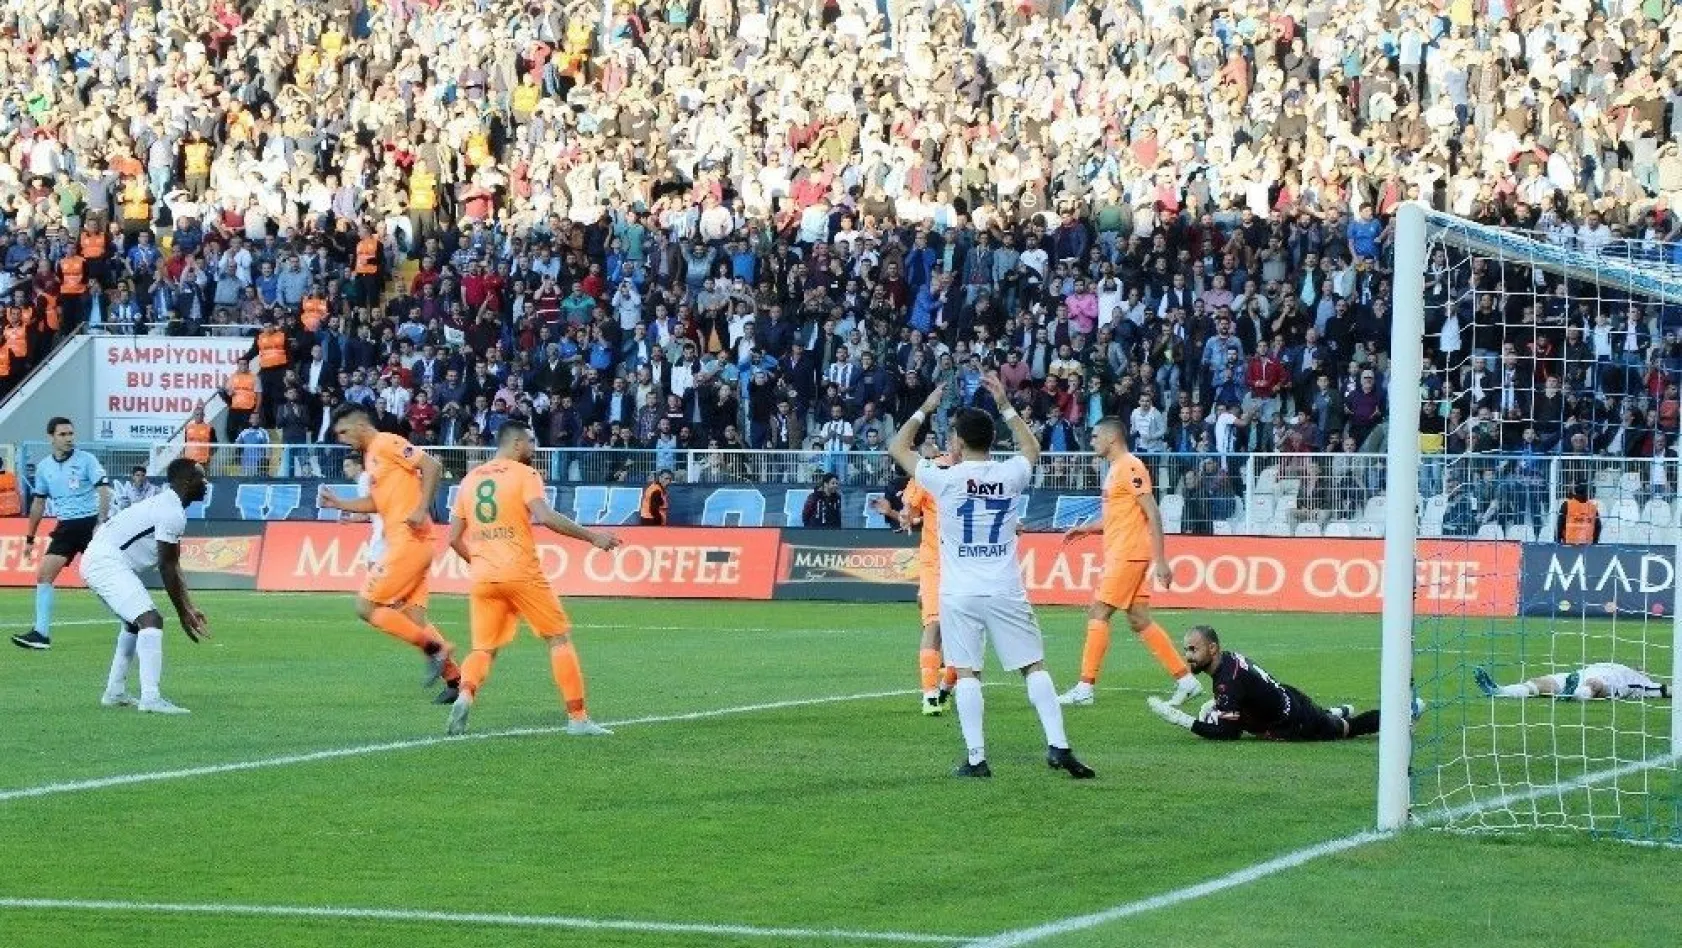 Spor Toto Süper Lig: B.B. Erzurumspor: 1 - Aytemiz Alanyaspor: 0 (Maç sonucu)
